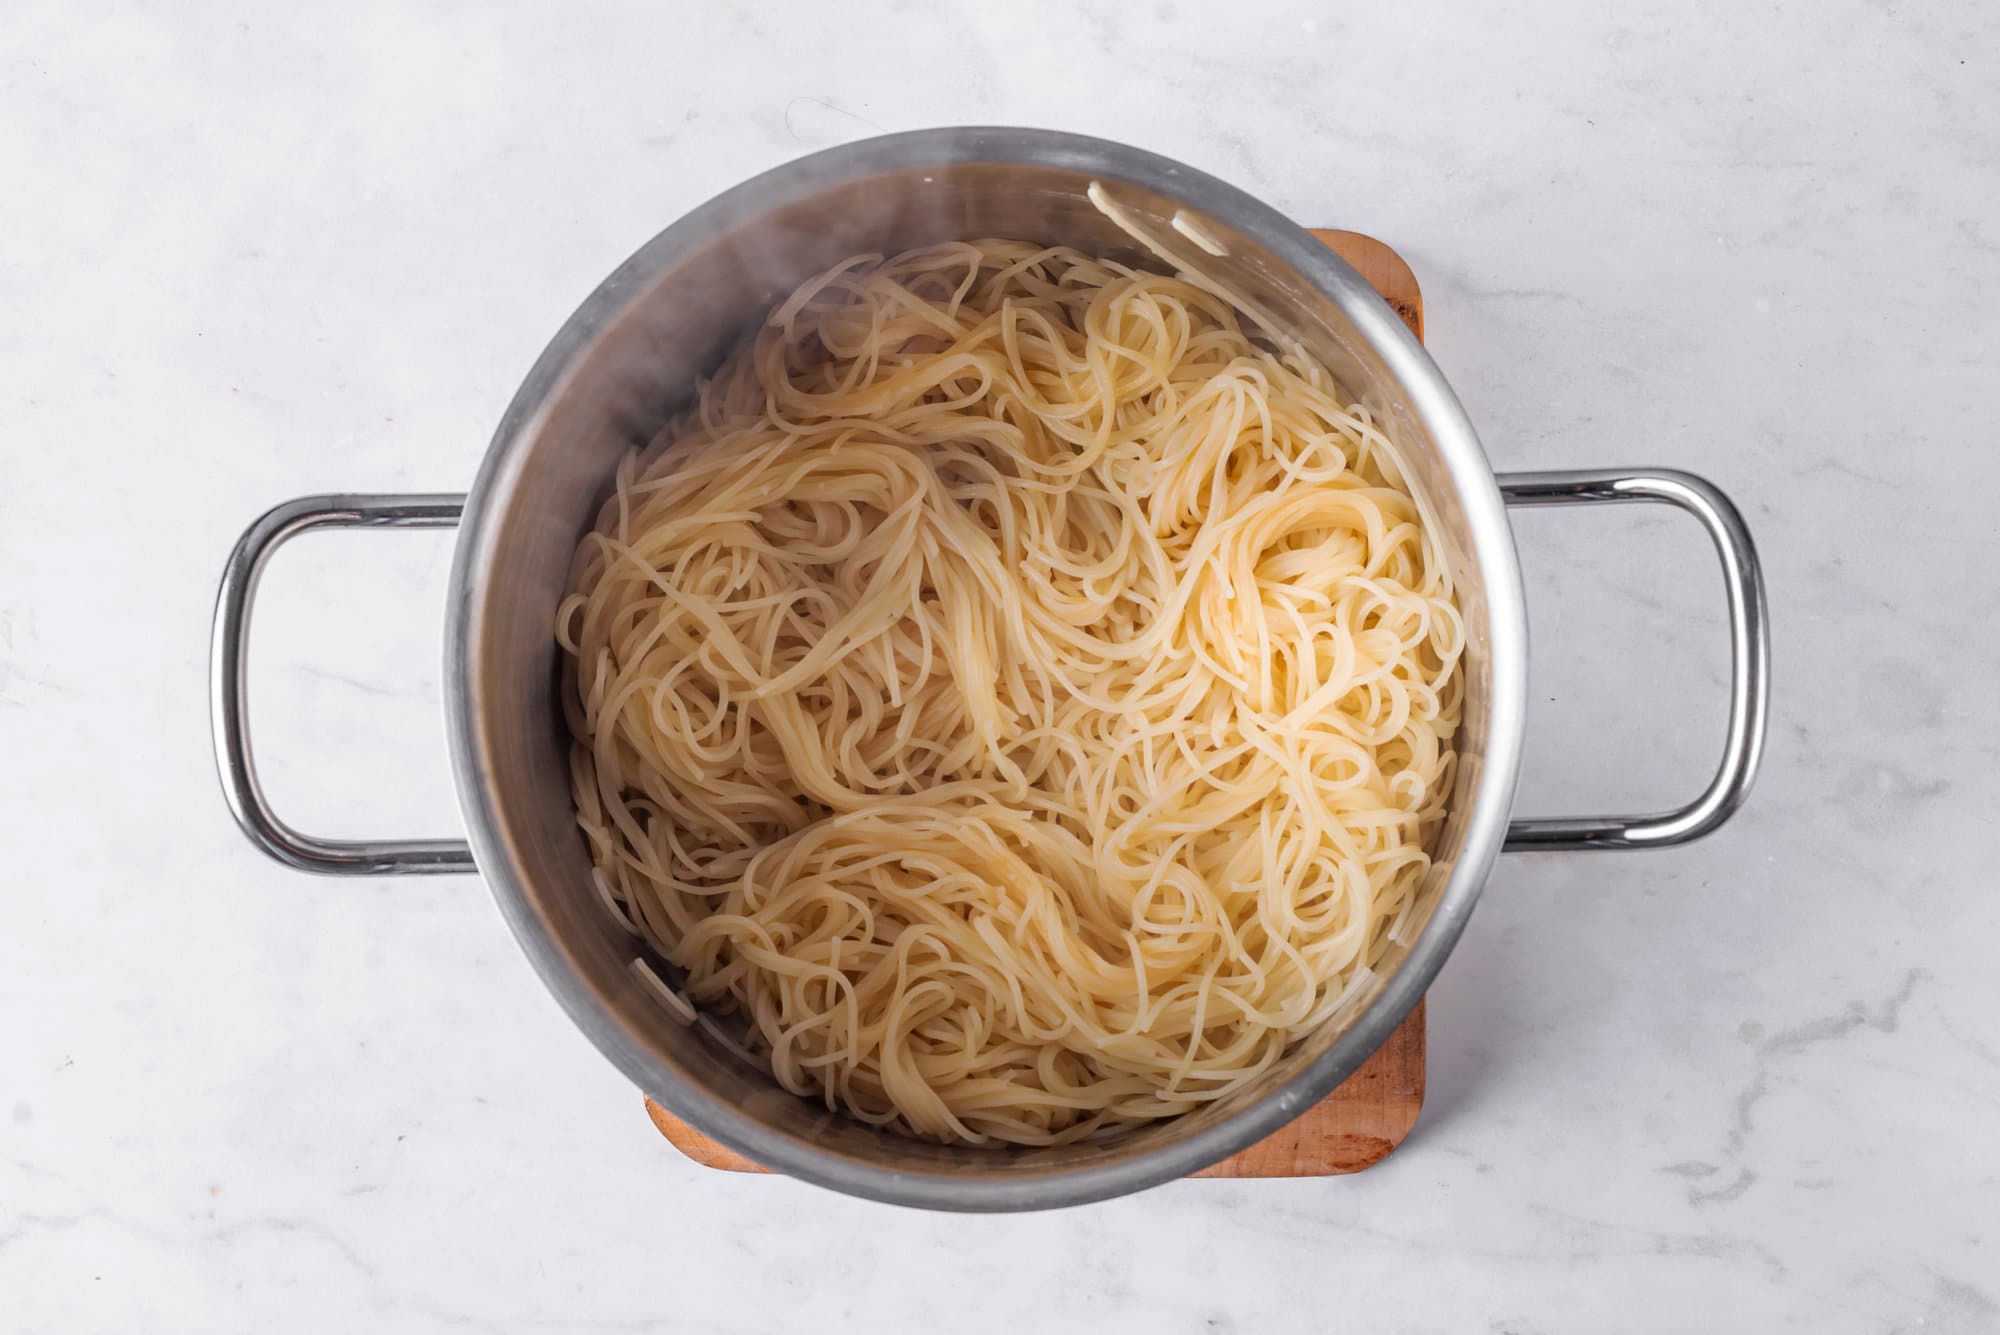 capellini-pasta-in-a-silver-pot-on-a-wooden-board